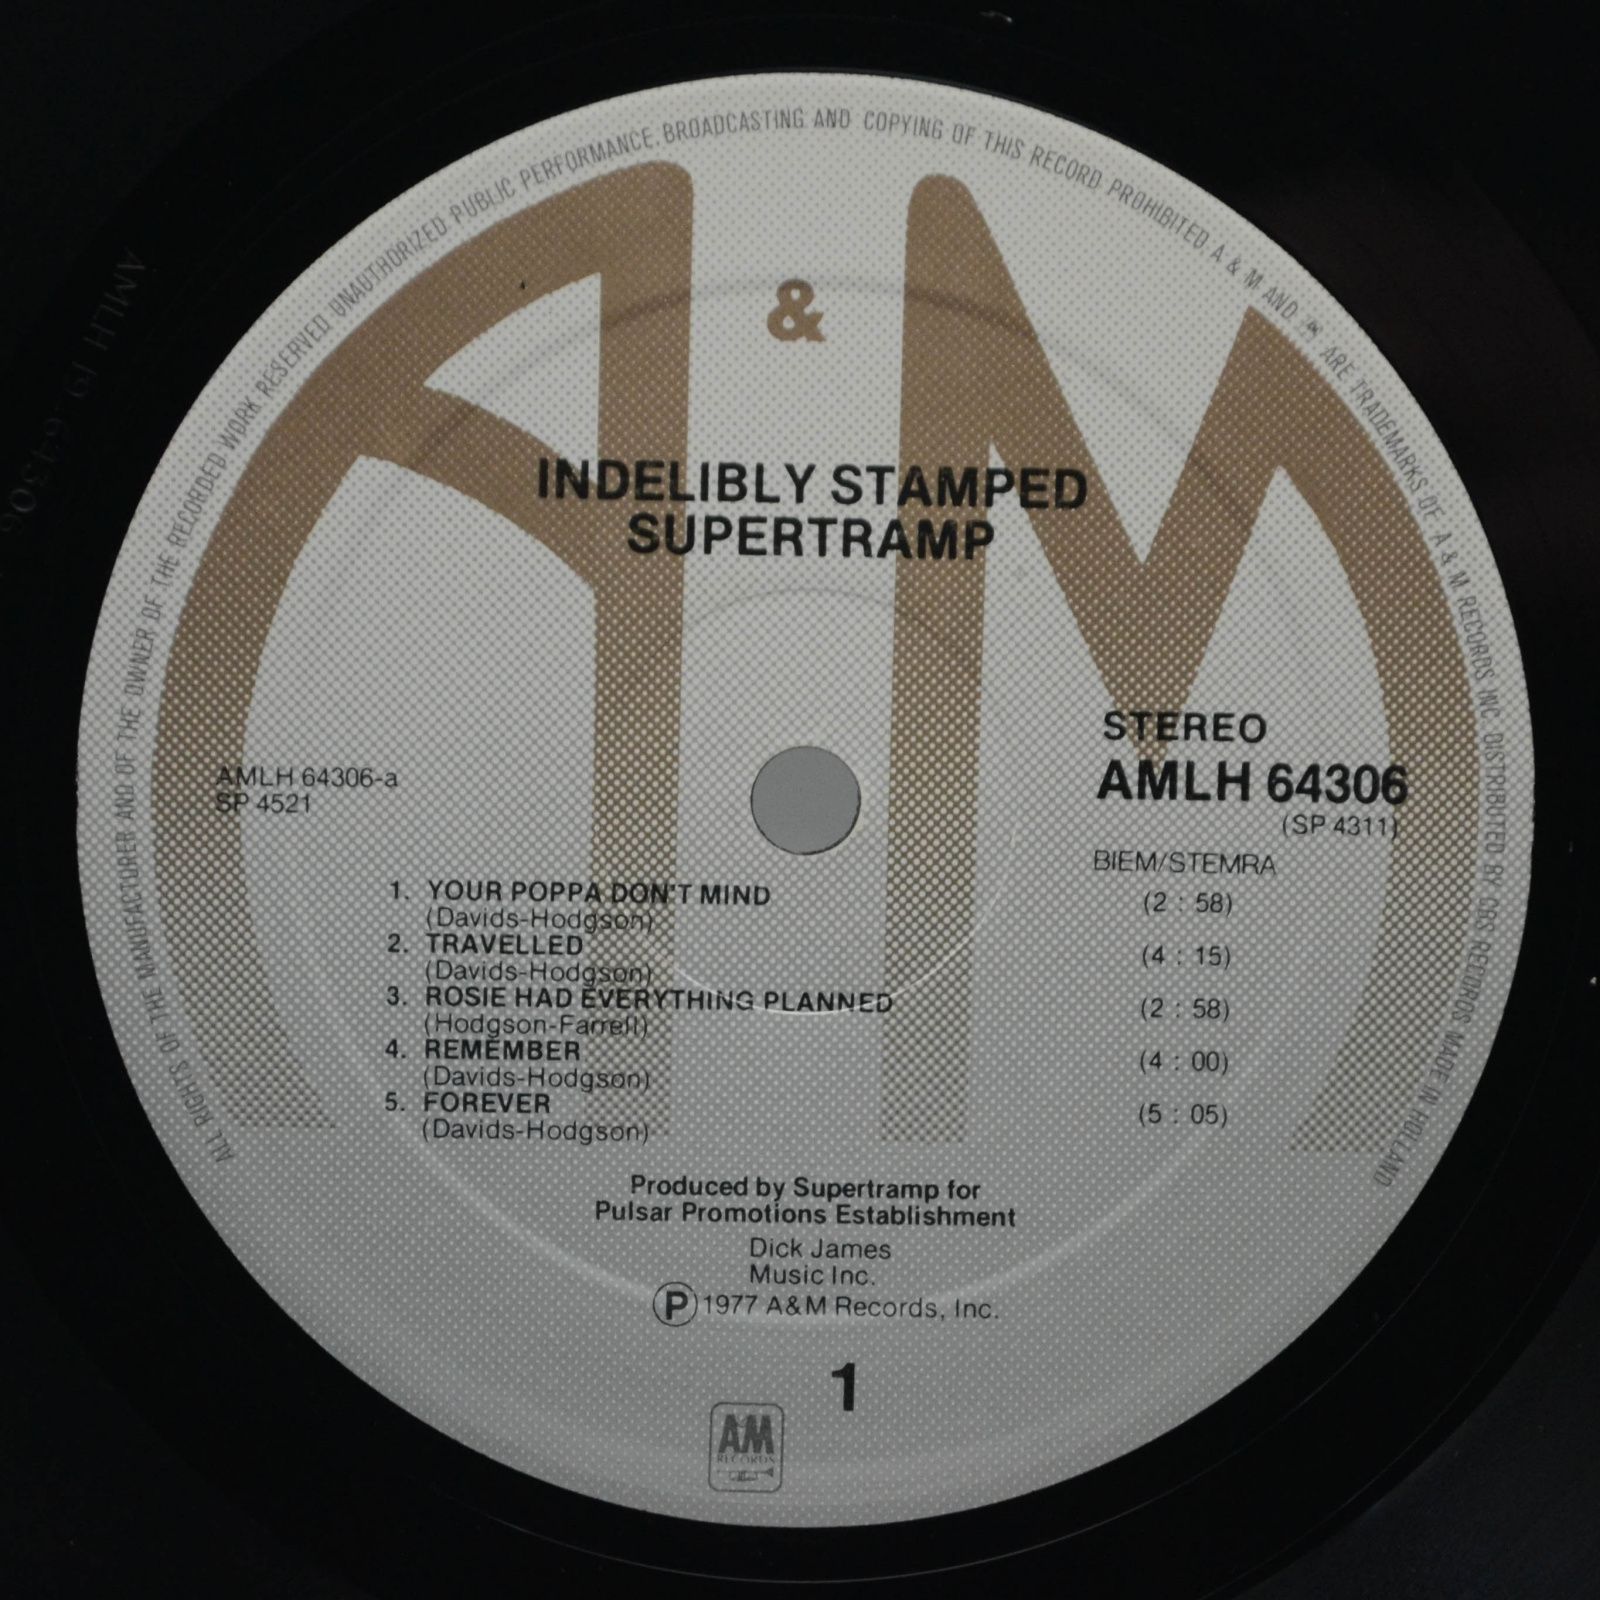 Supertramp — Indelibly Stamped, 1971